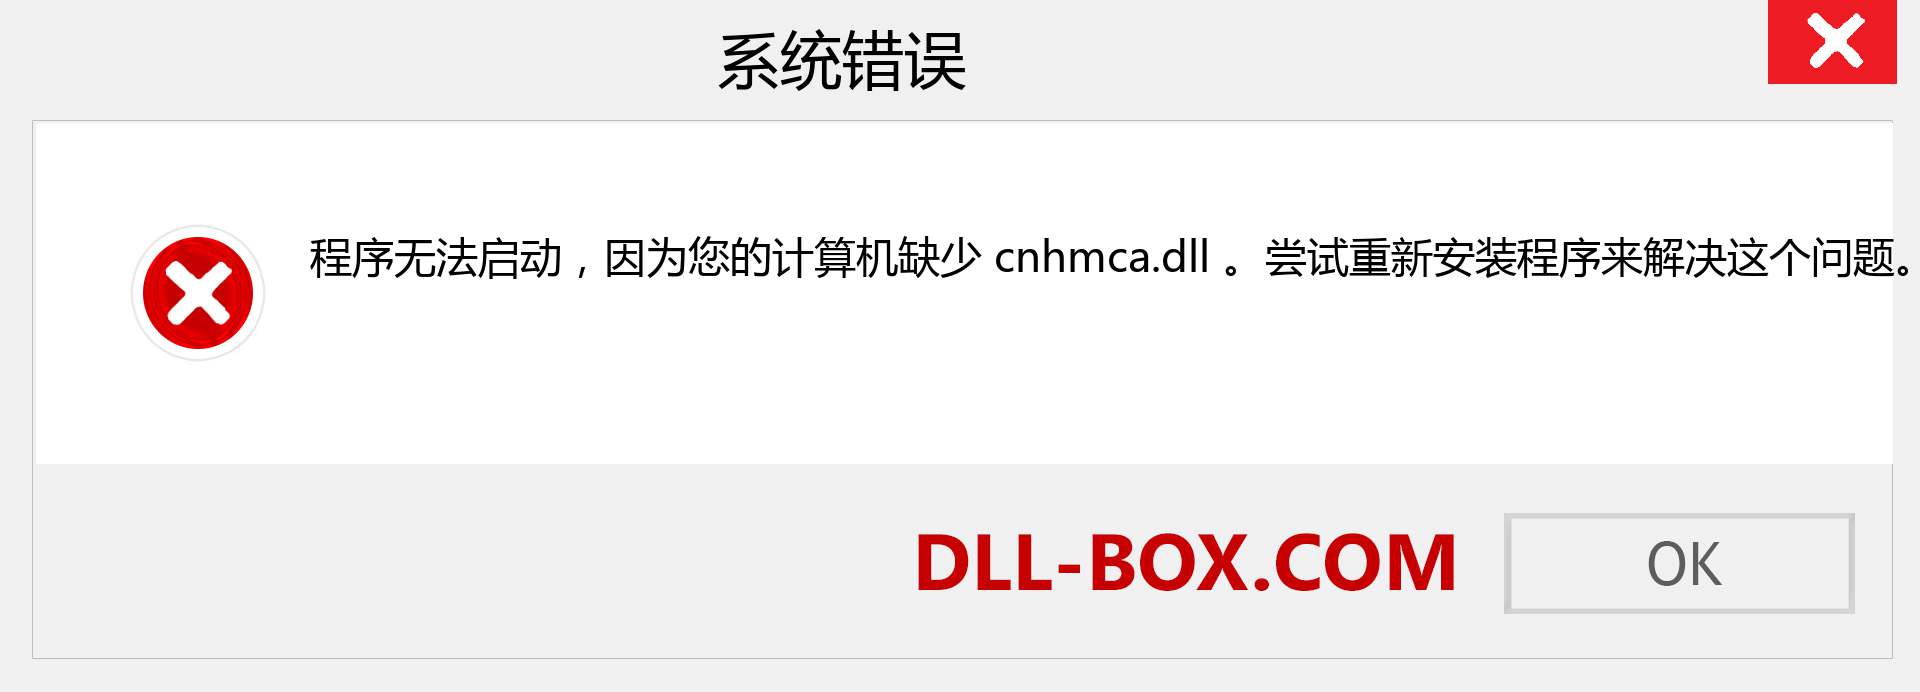 cnhmca.dll 文件丢失？。 适用于 Windows 7、8、10 的下载 - 修复 Windows、照片、图像上的 cnhmca dll 丢失错误